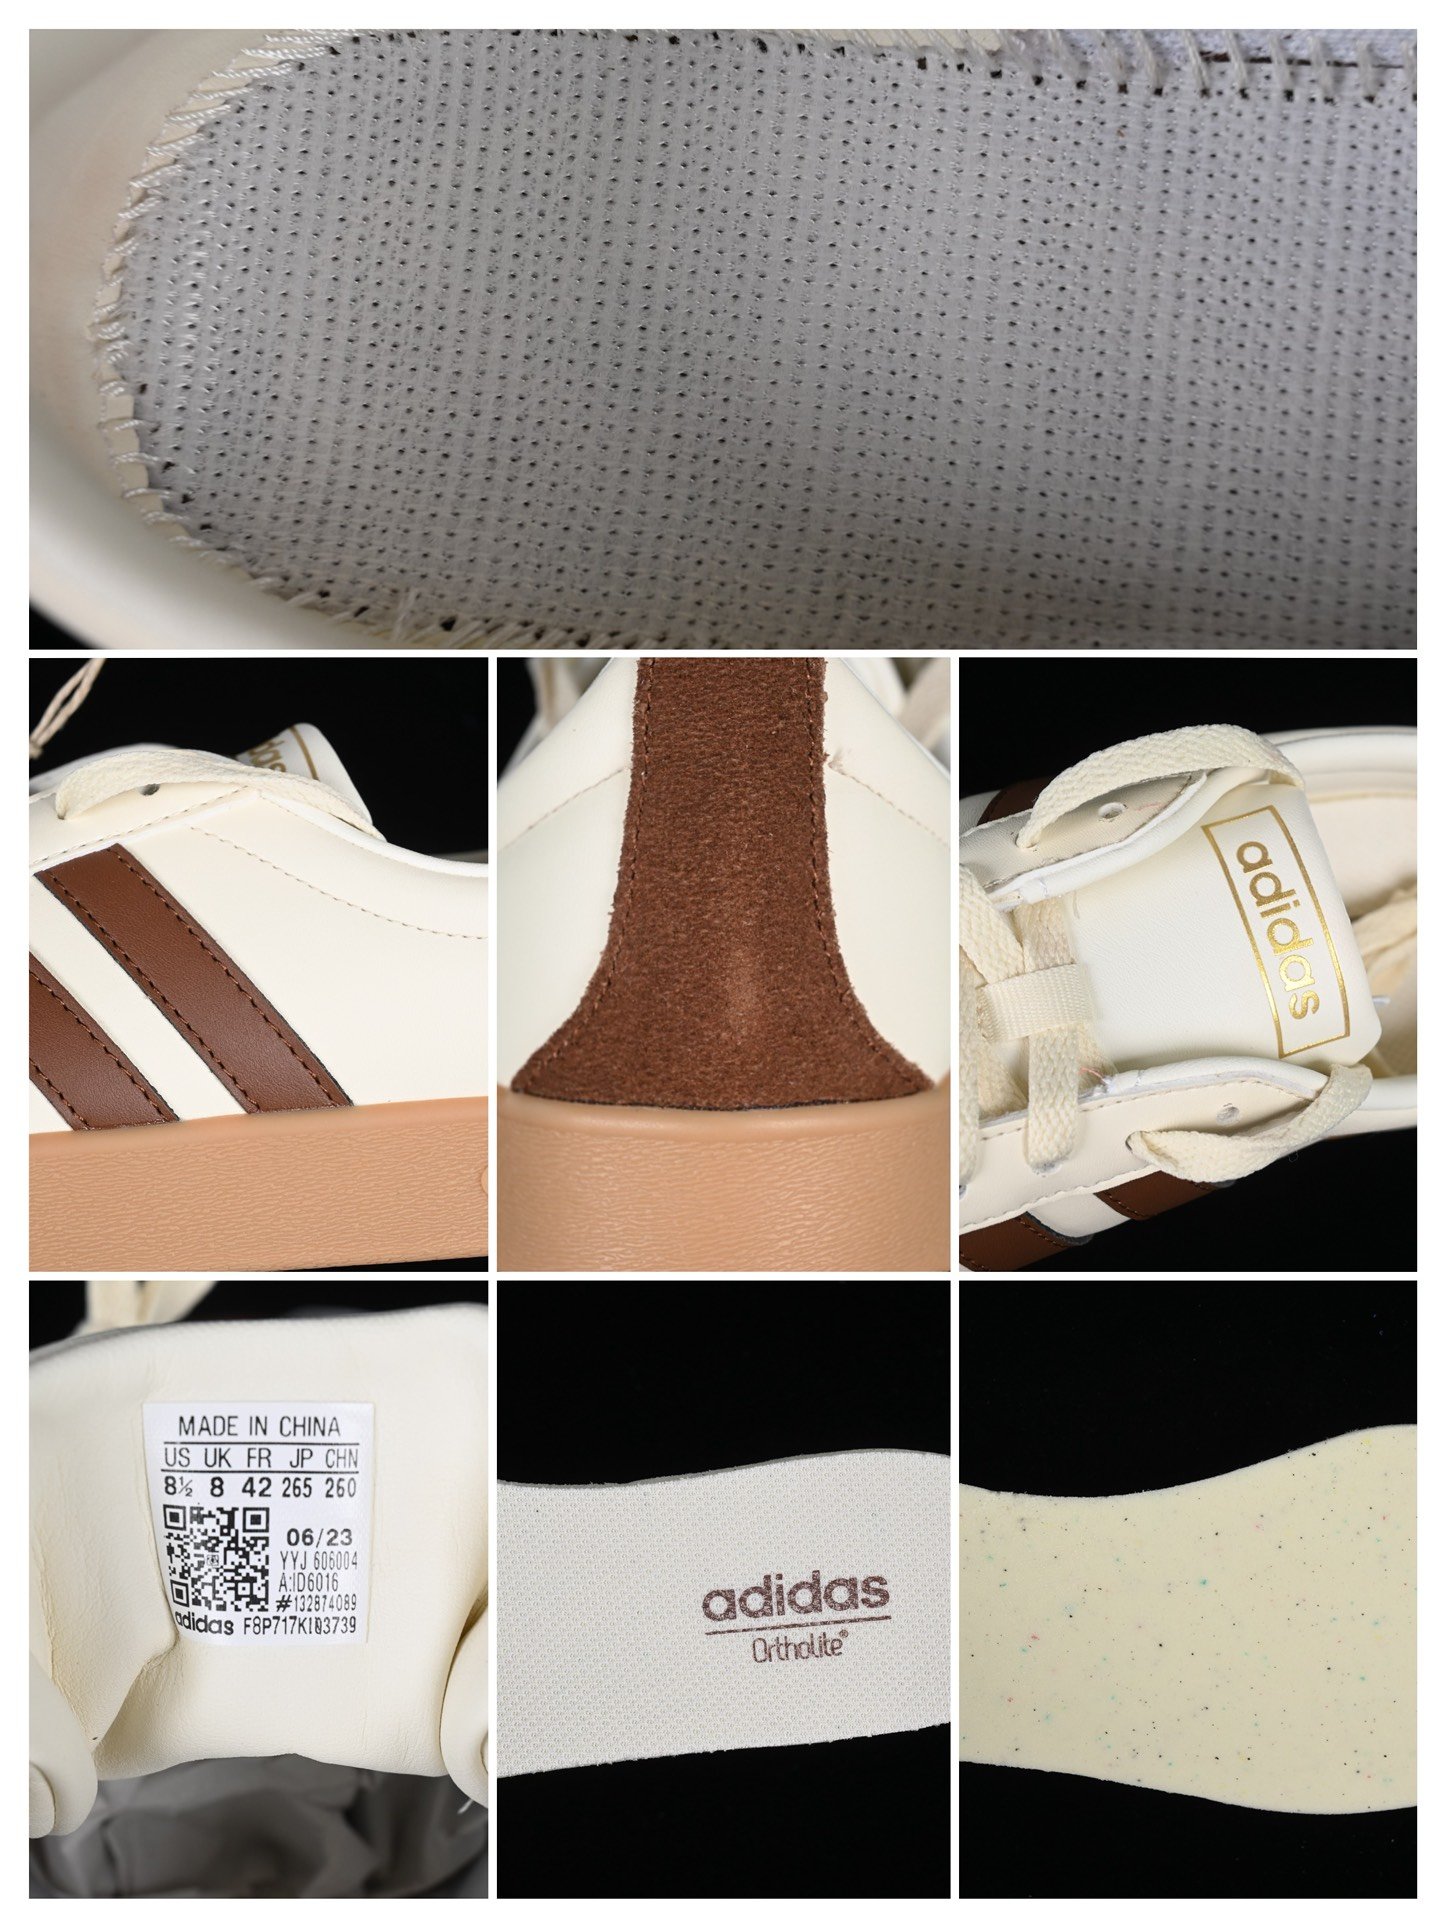 AdNeoVLCourt2.0ID6016阿迪三叶草时尚潮流板鞋#原厂原数据版型皮料切割干净无任何毛边鞋